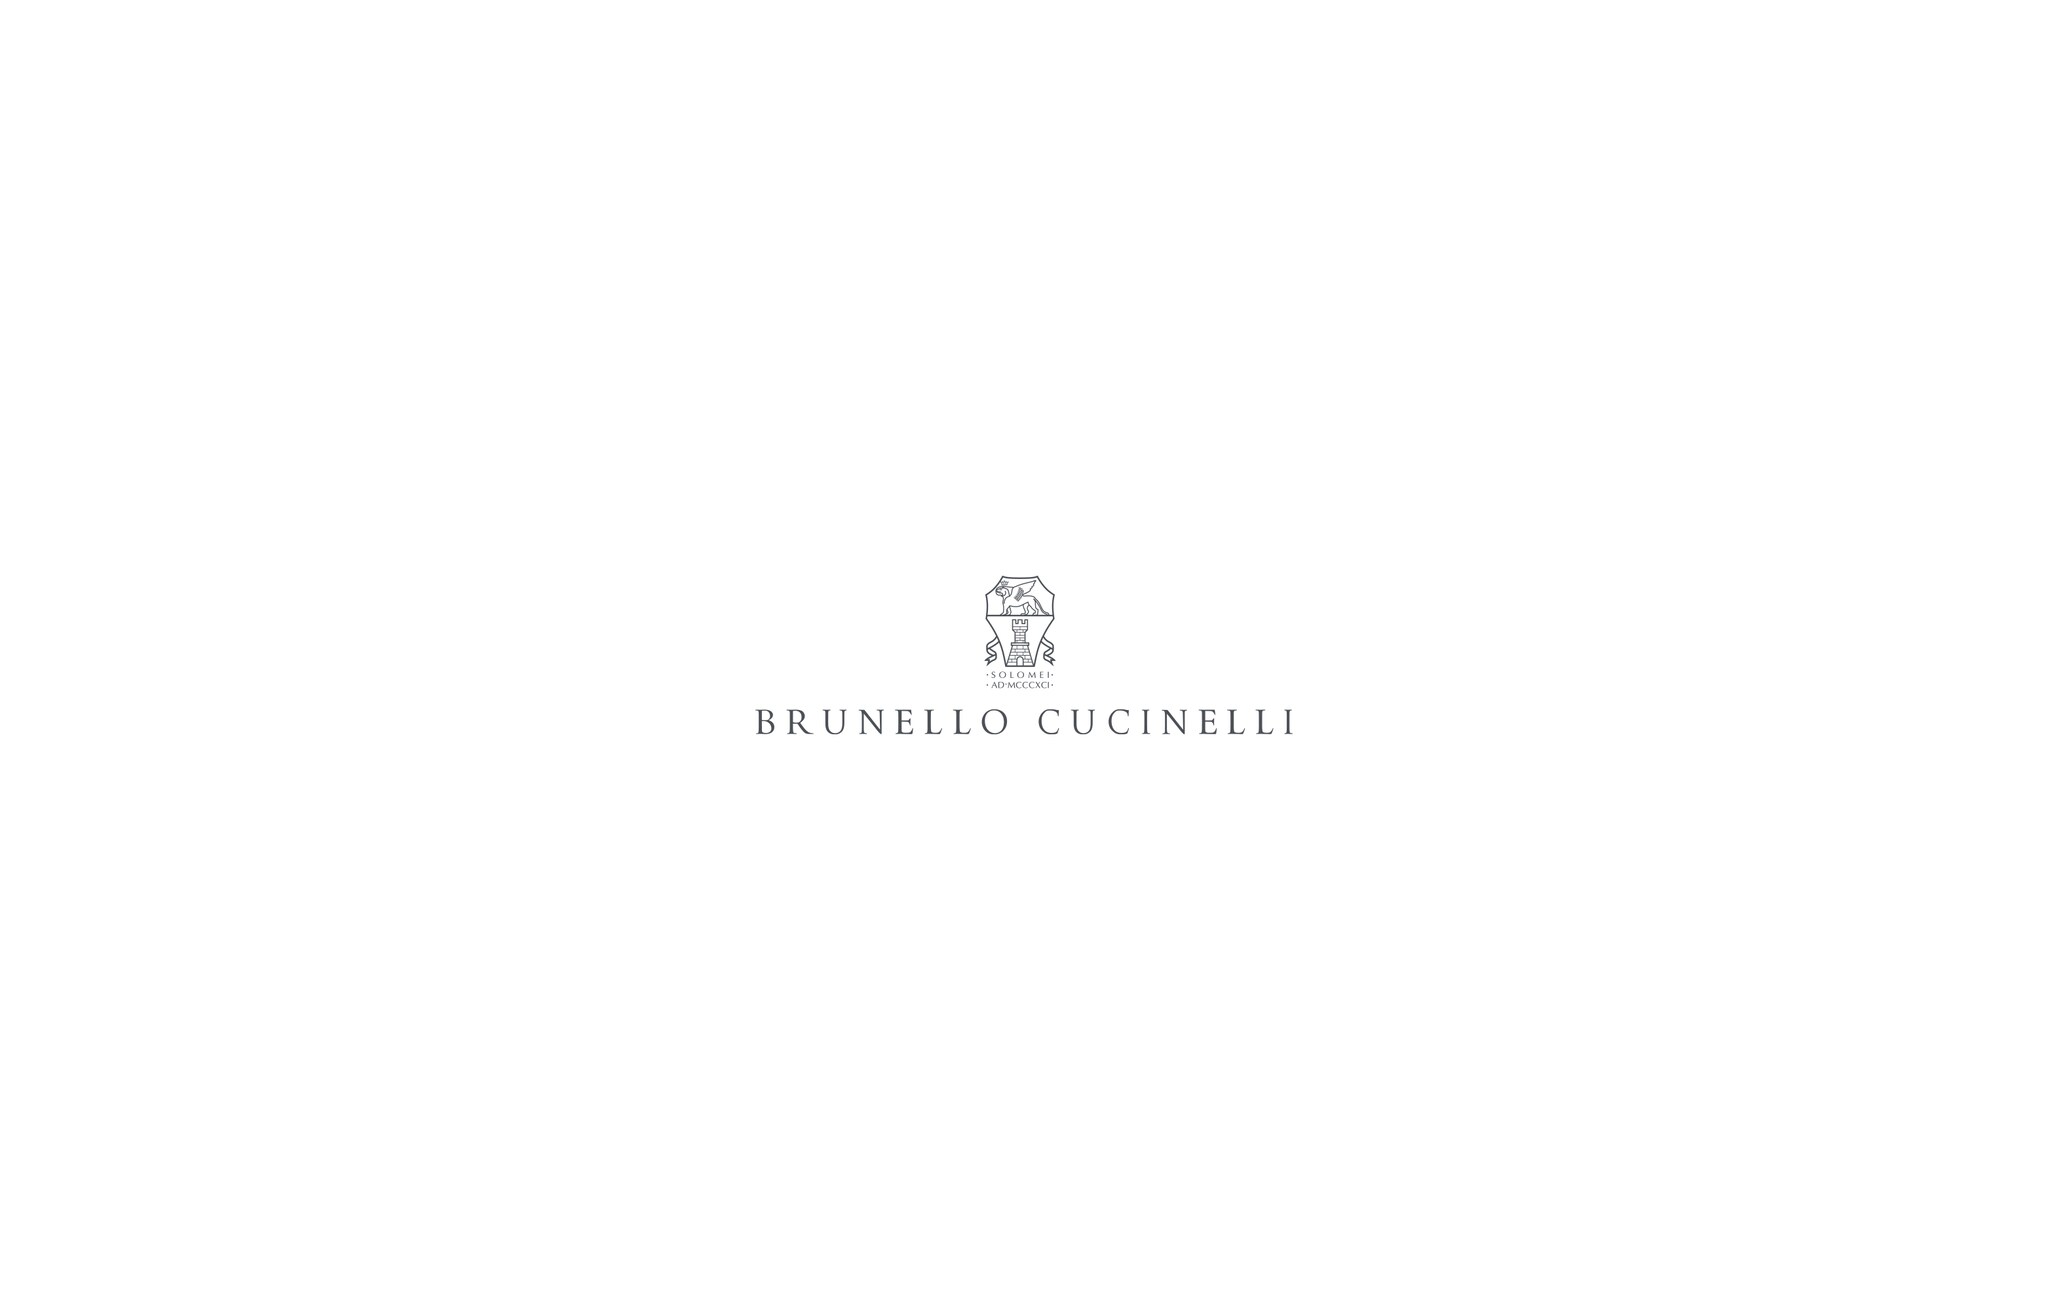  Dazzling Mesh sweater Beige Woman - Brunello Cucinelli 